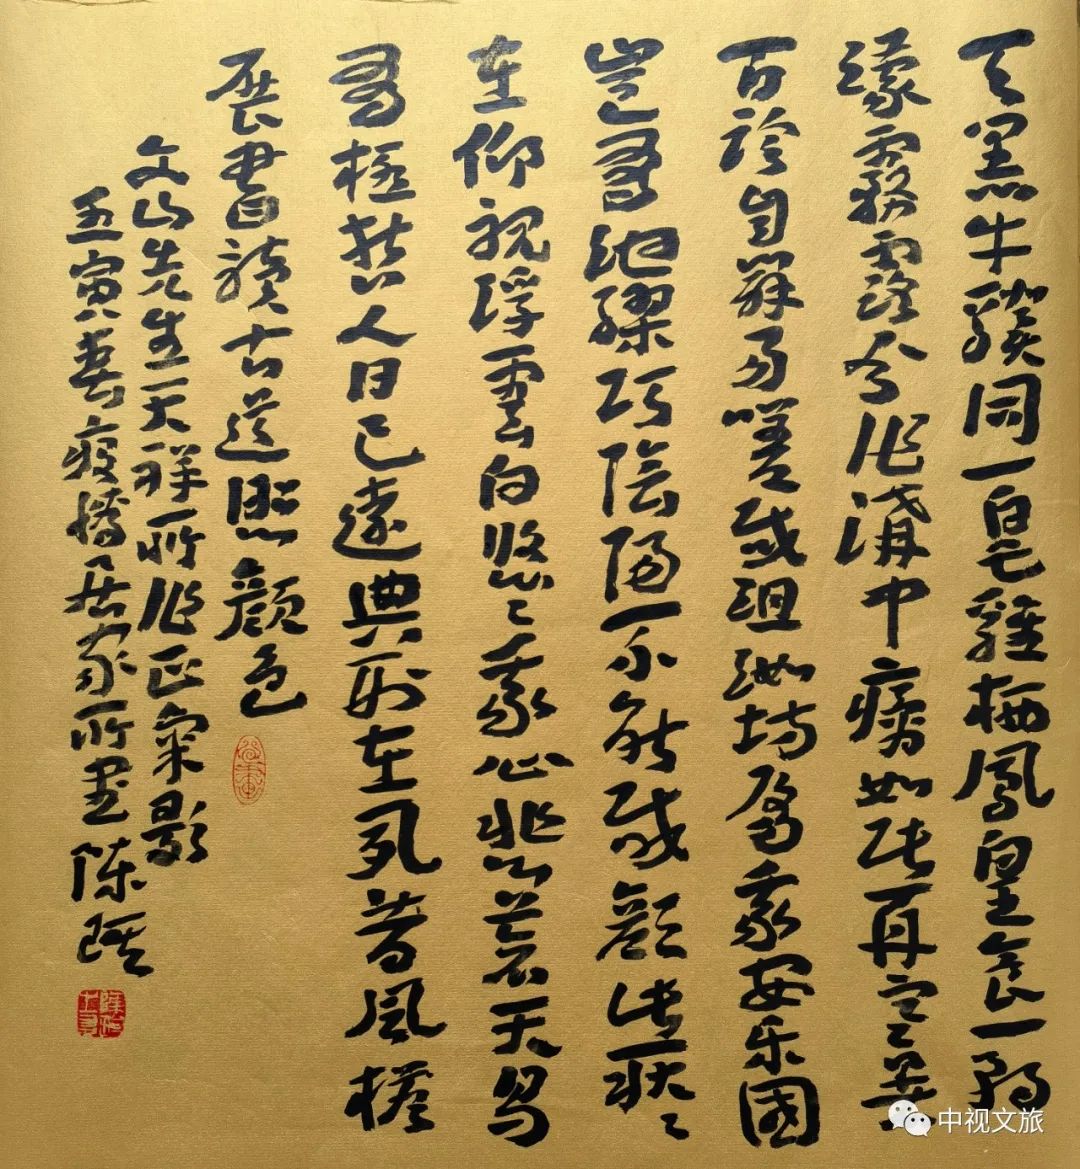 陈琪画·杨克诗·张筠英、瞿弦和朗诵， 《我在一颗石榴里看见了我的祖国》倾情播出